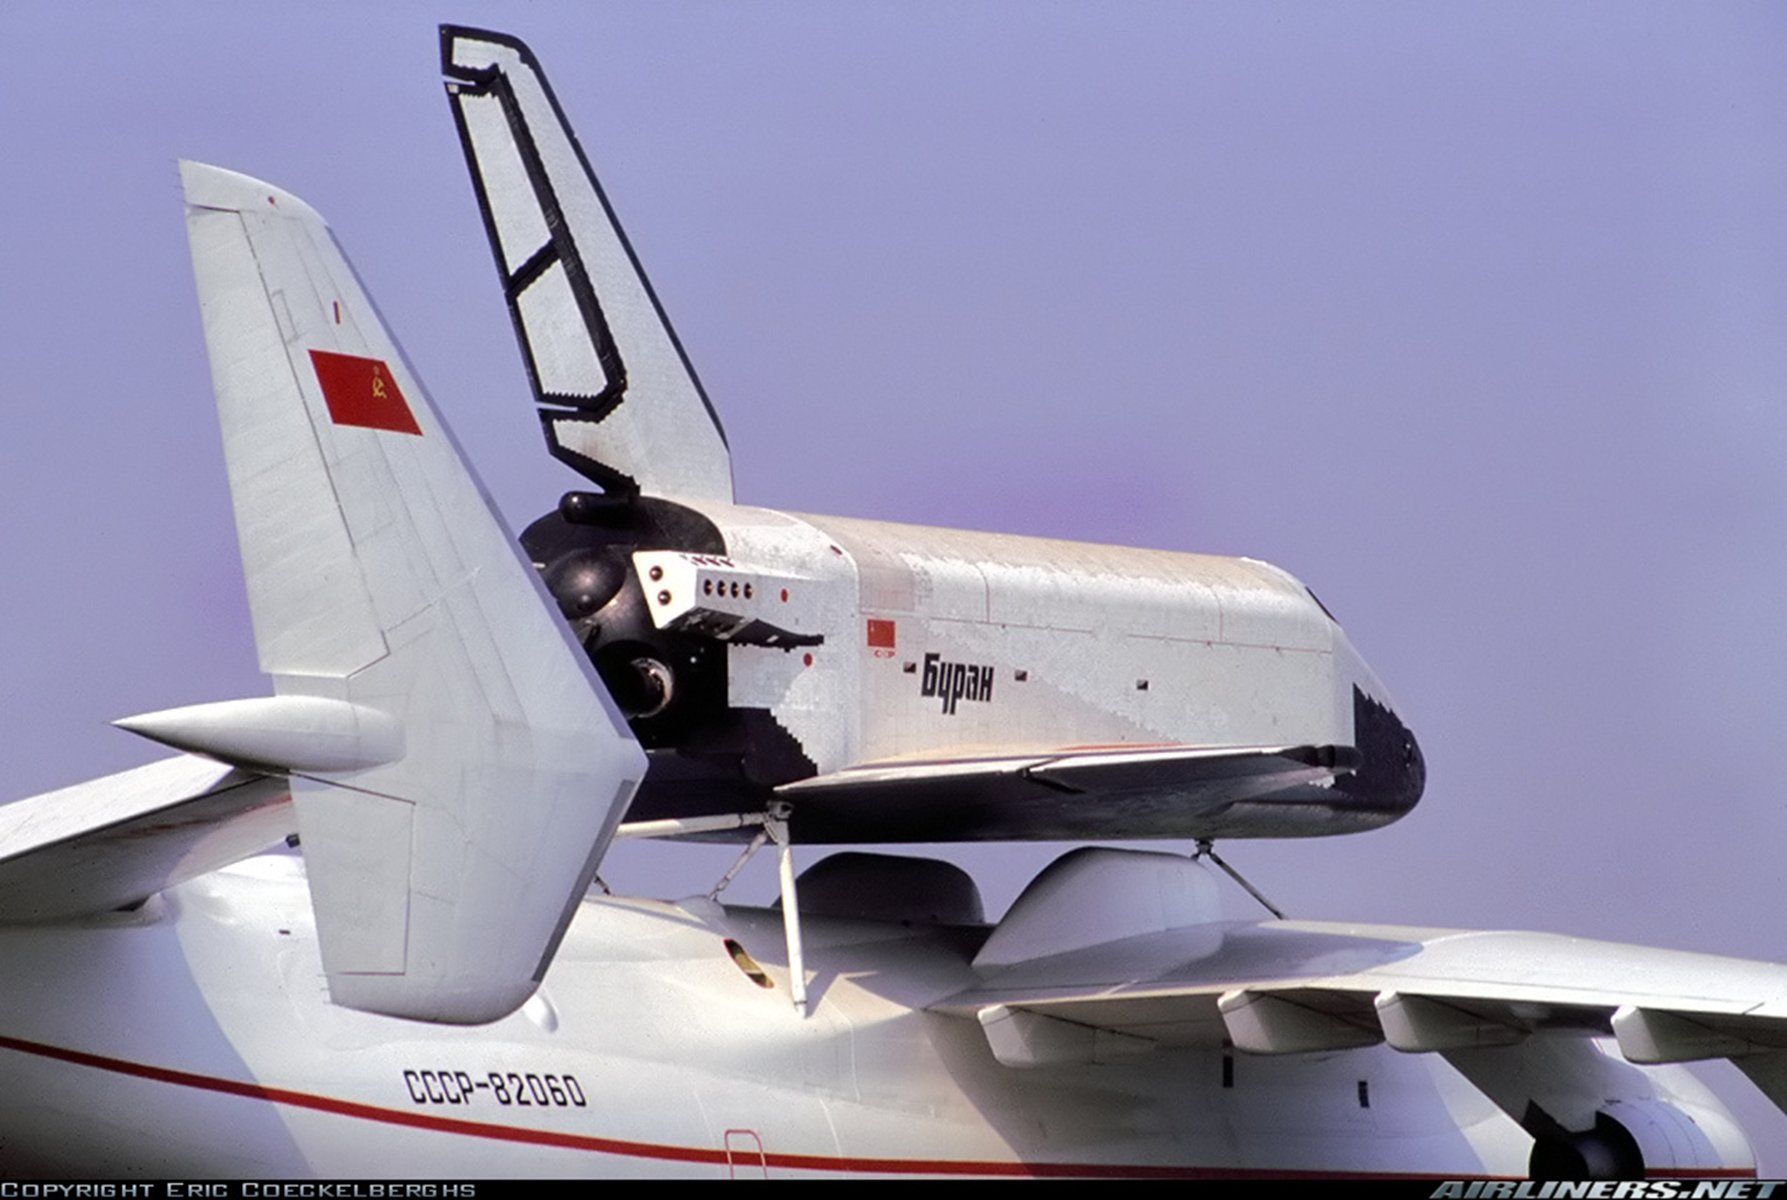 Картинки бурана. АН-225 С Бураном. Космический корабль Буран. Мрия 225 Буран. Буран космический корабль на АН 225.